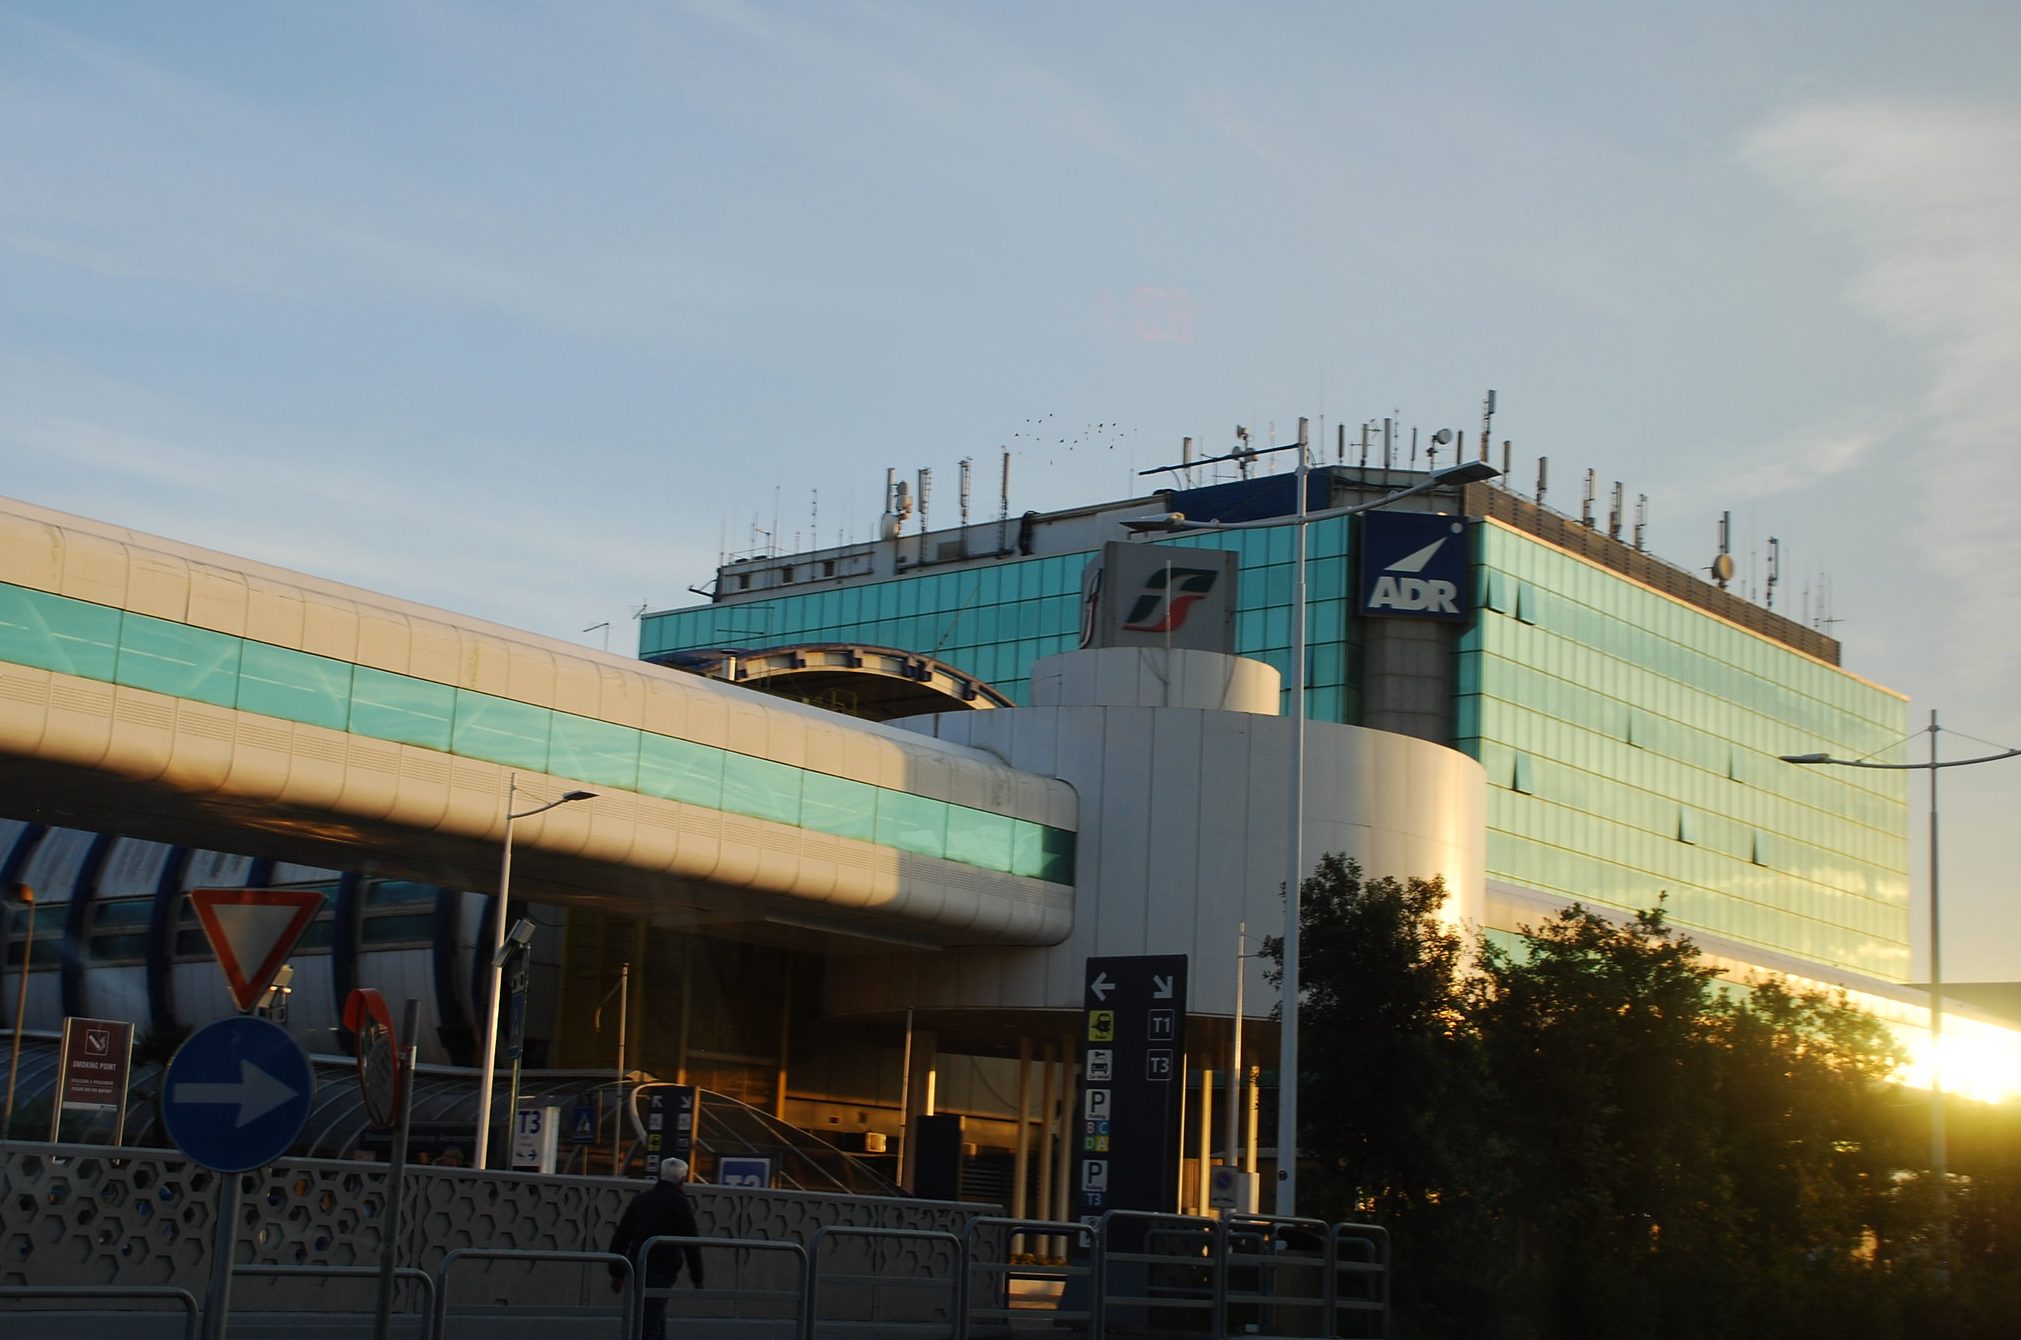 aeroporto roma fiumicino